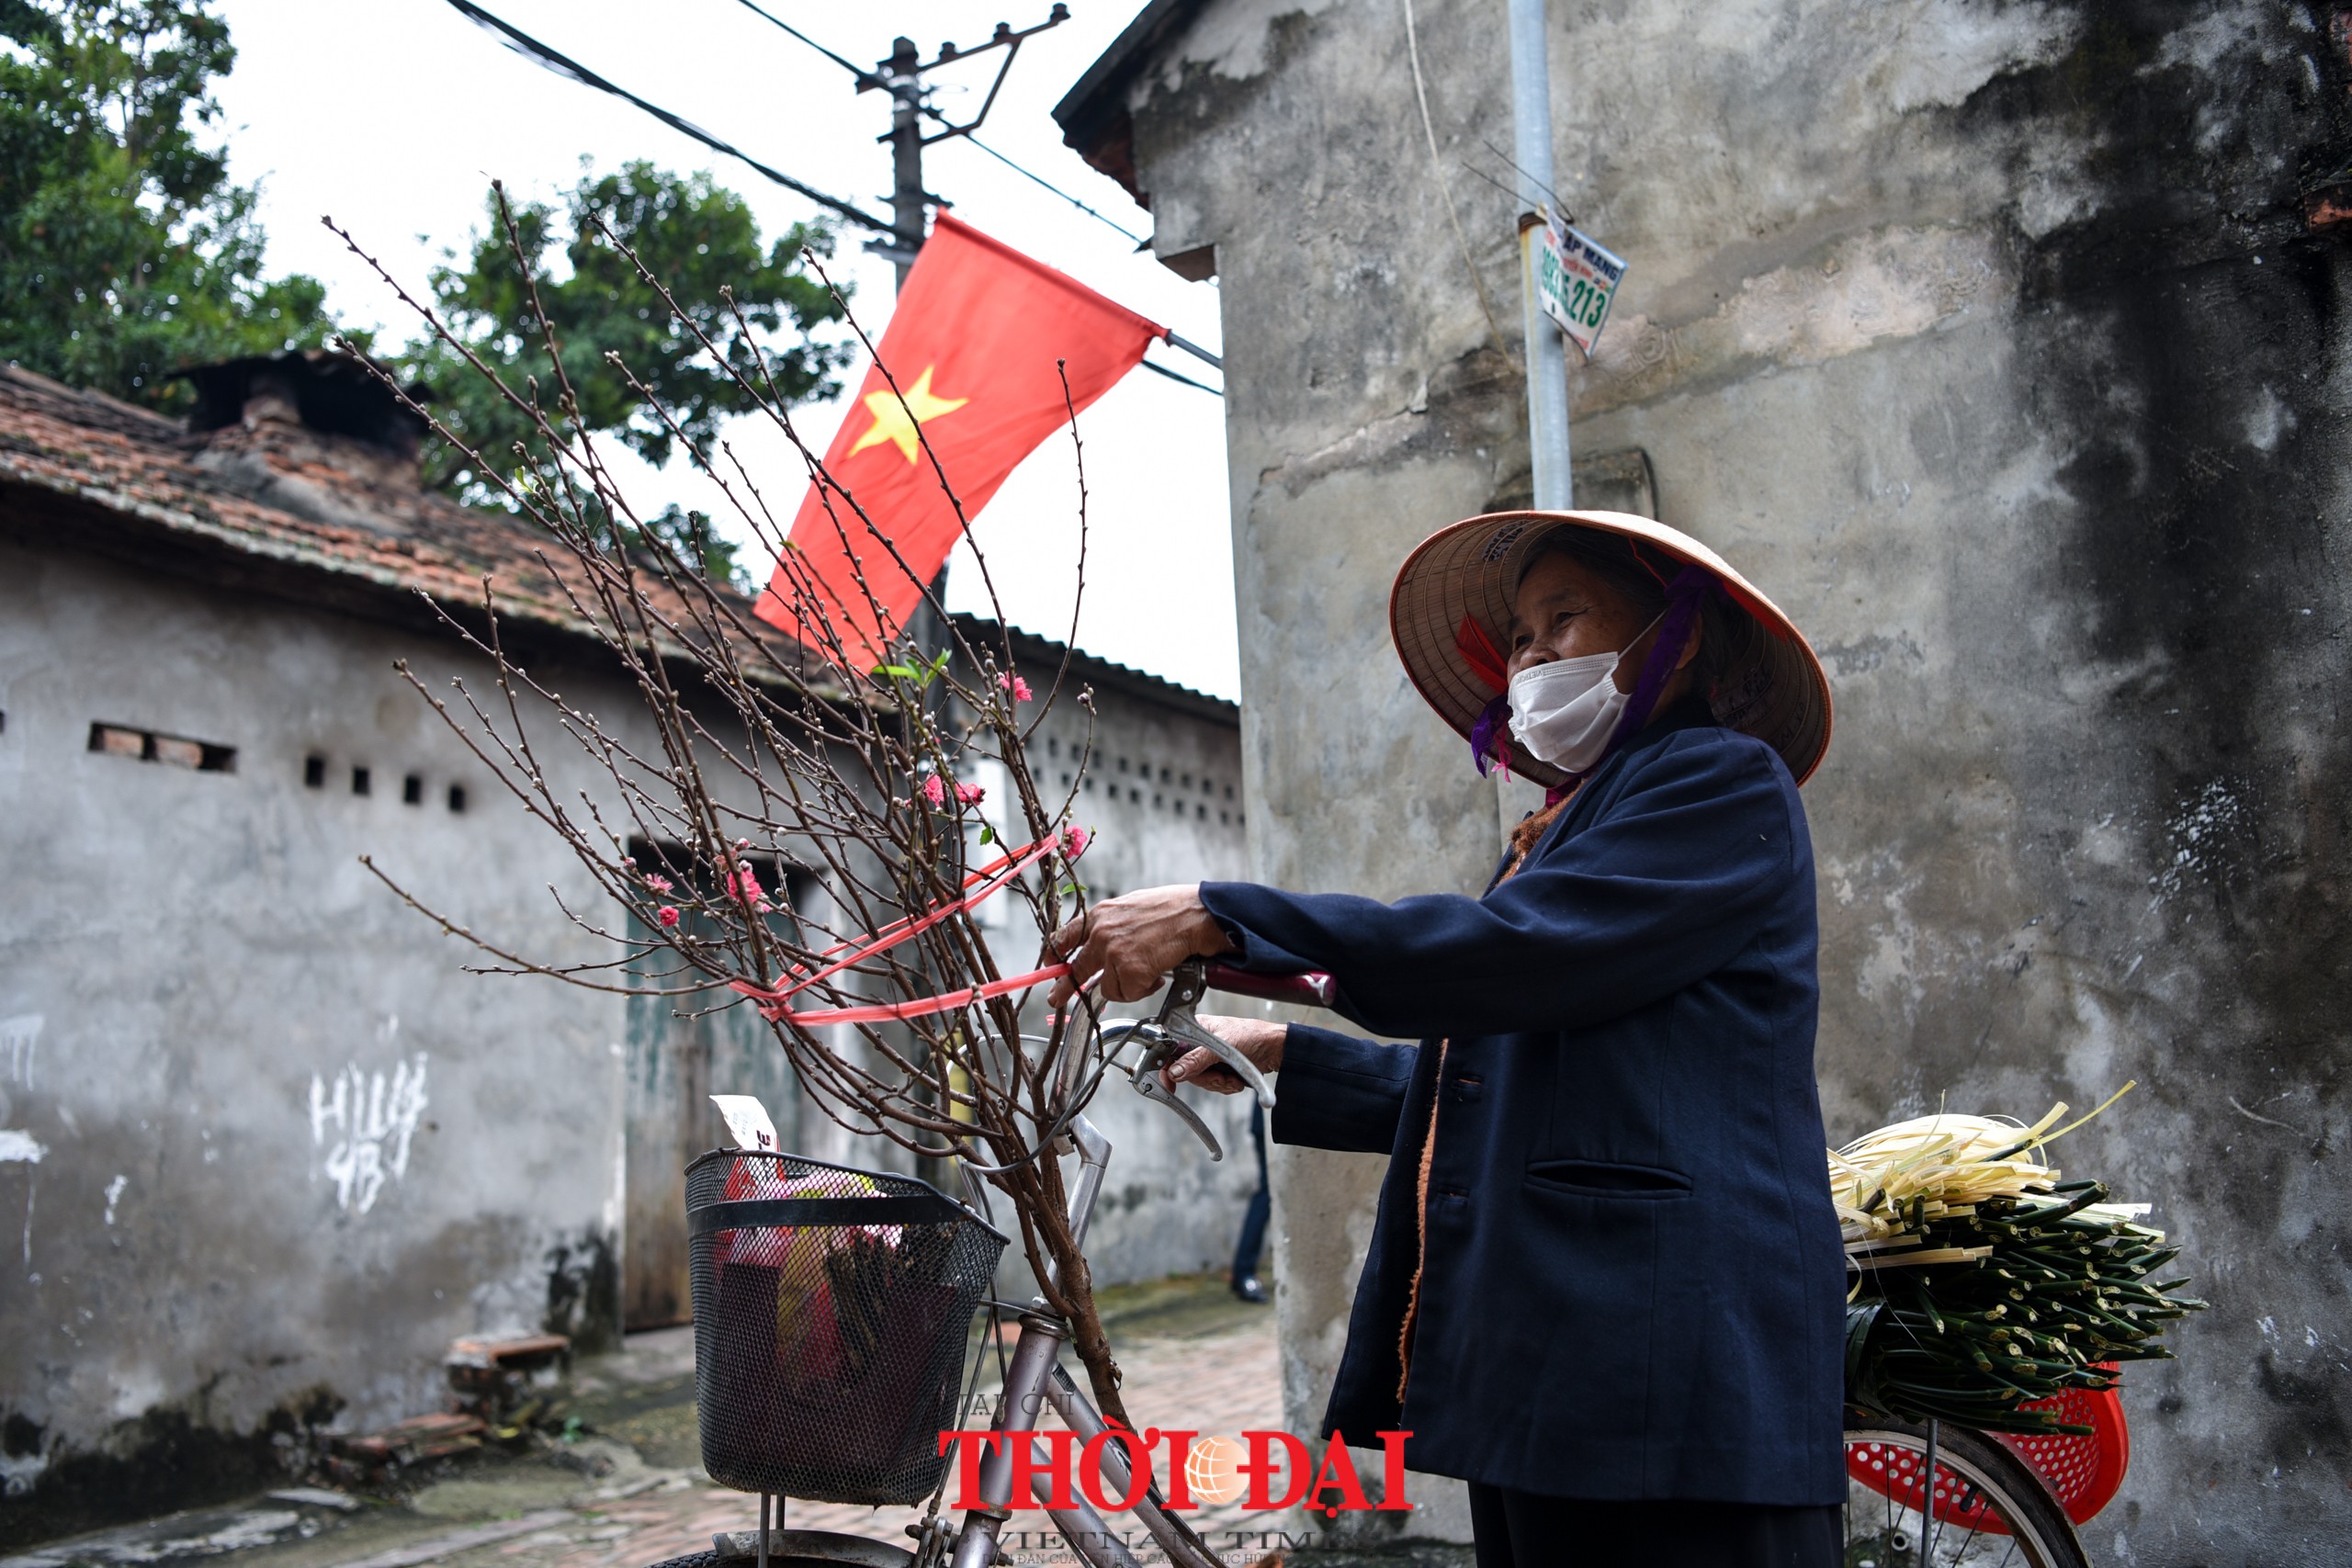 Gần 30 Đại sứ, nhân viên ngoại giao, các tổ chức quốc tế trải nghiệm Tết cổ truyền Việt Nam ở làng cổ Đường Lâm